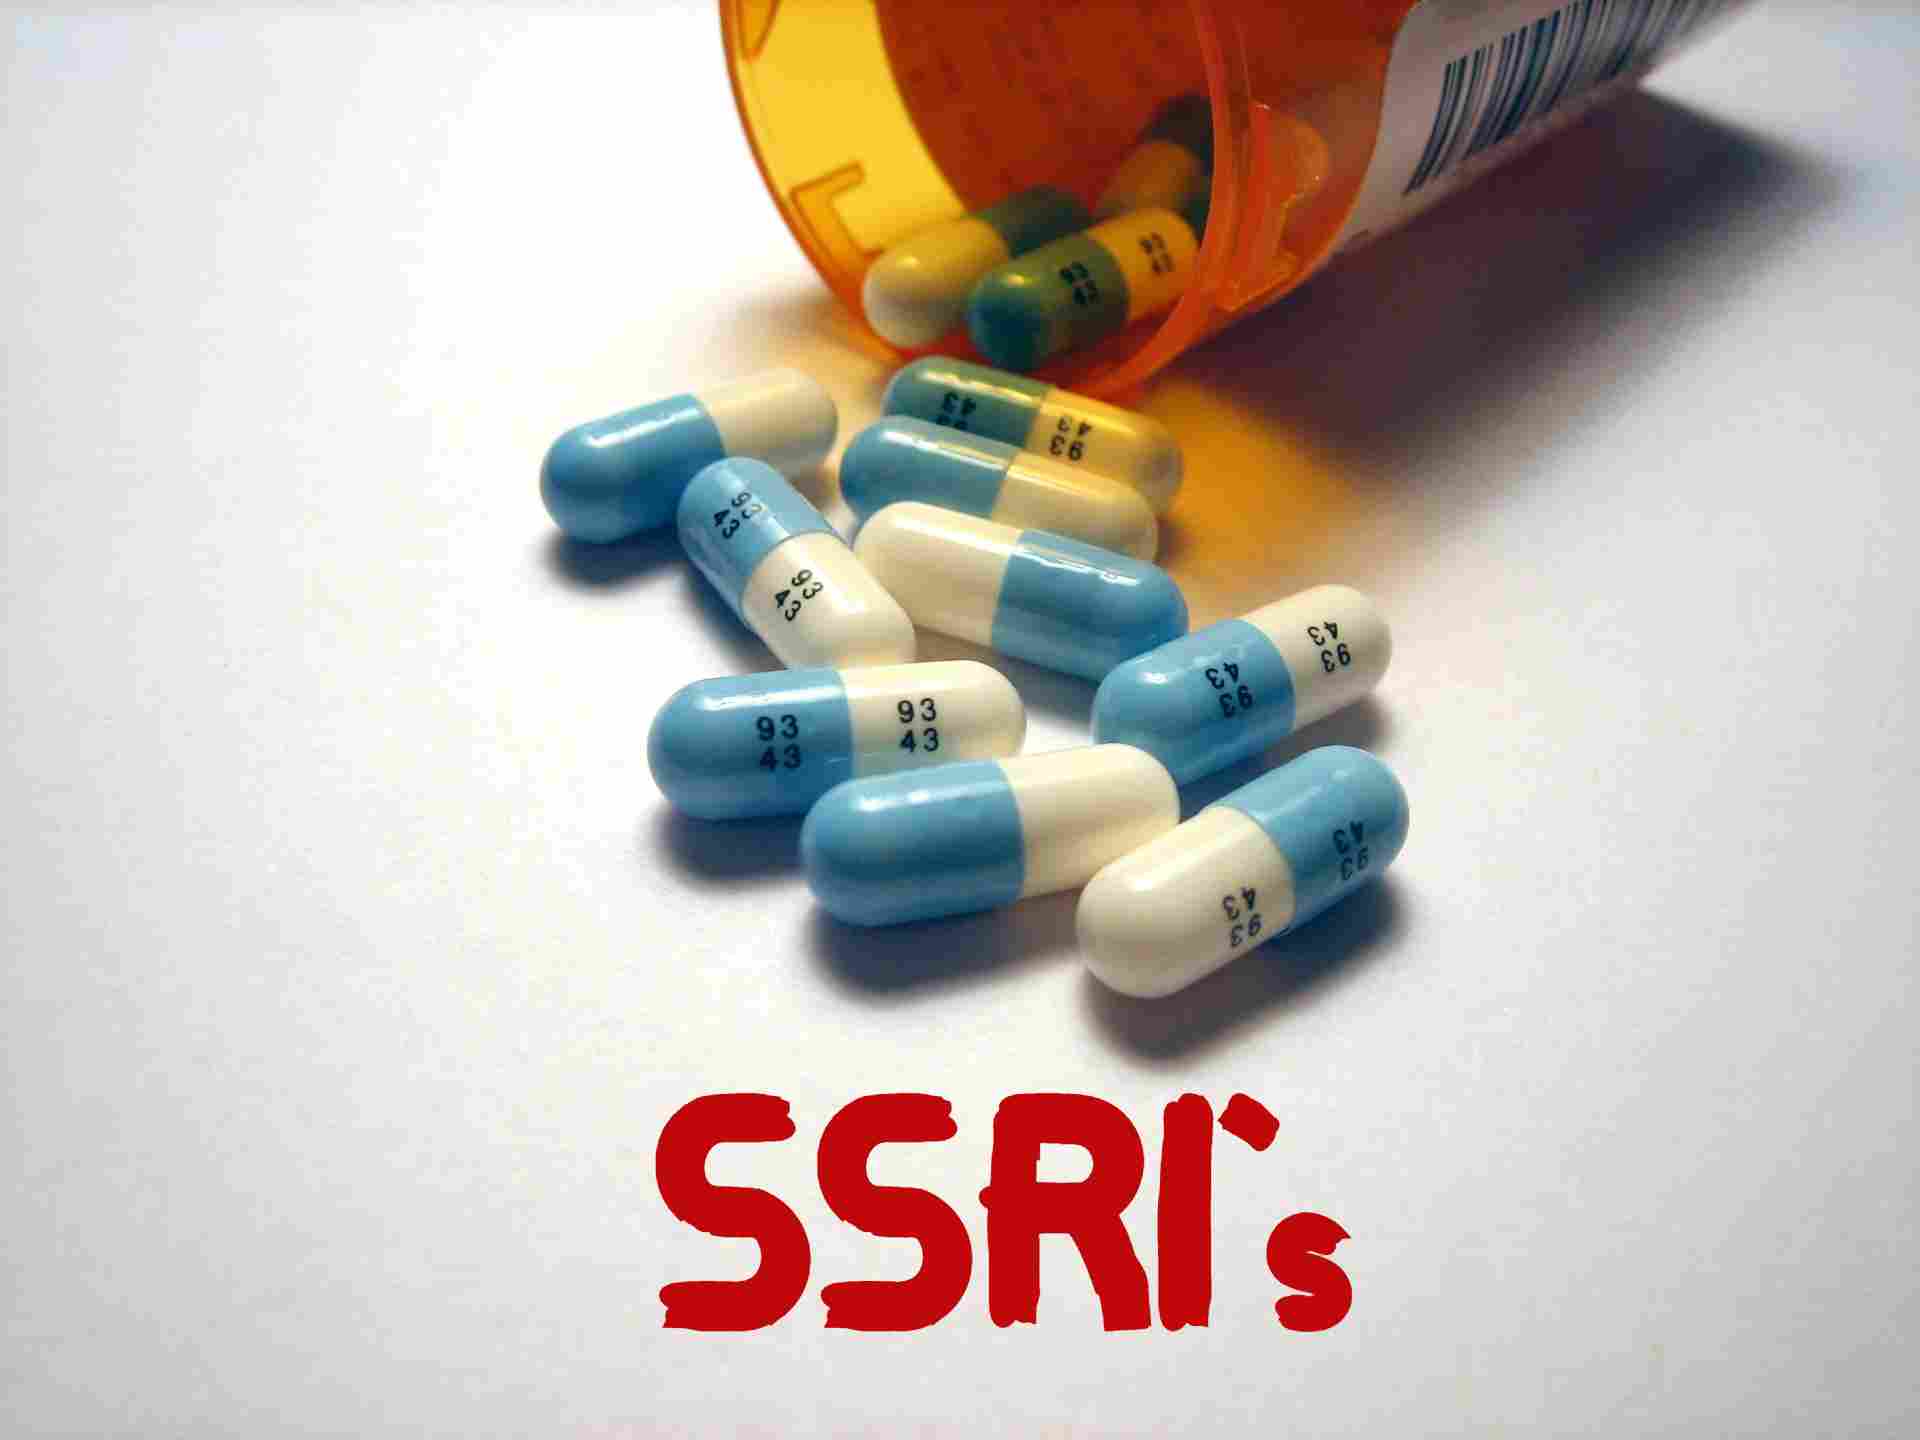 SSRI's